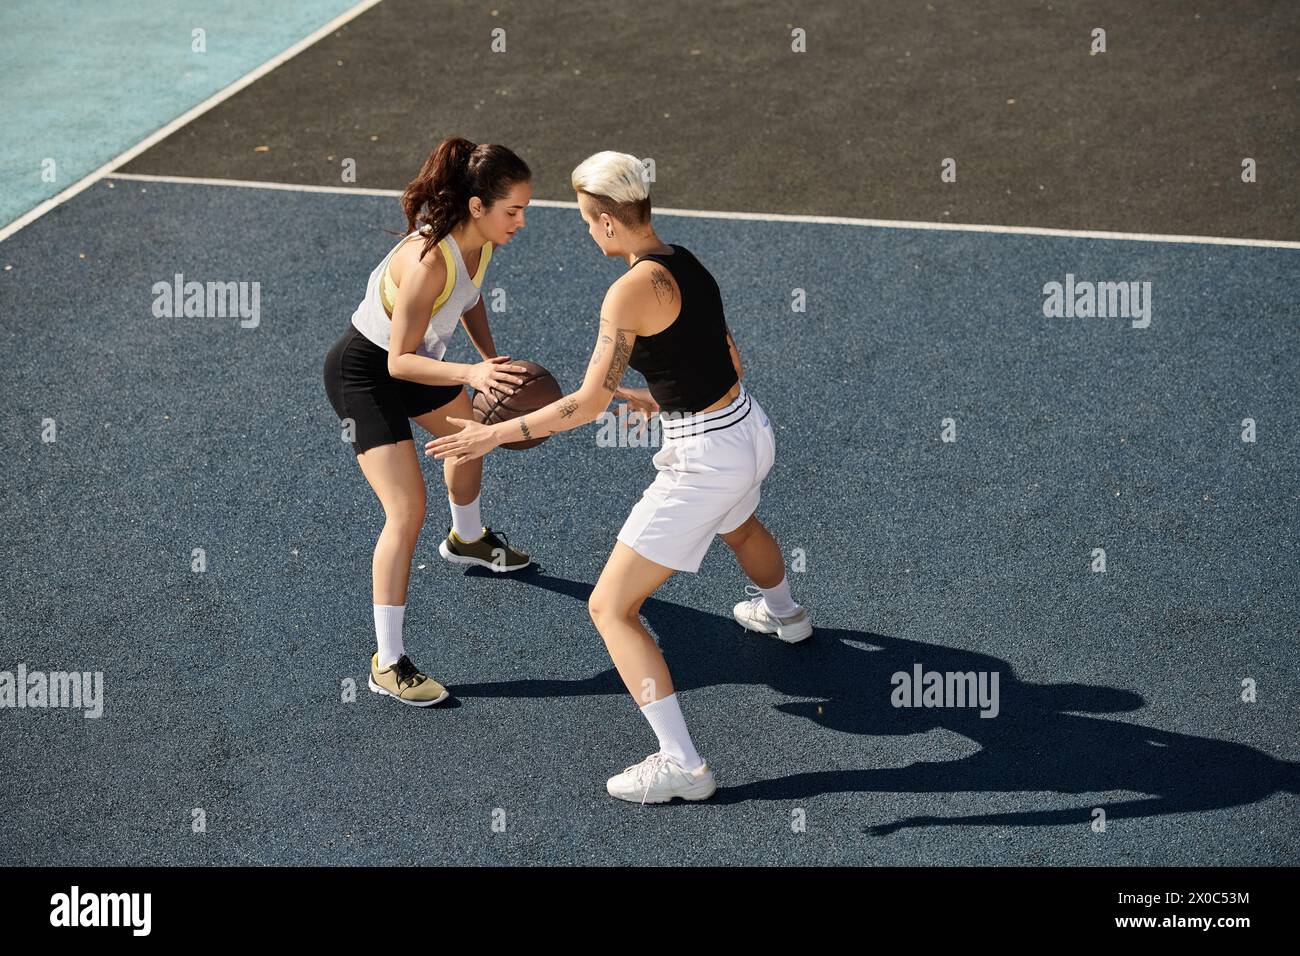 Deux femmes athlétiques se tiennent triomphalement au sommet d'un court de tennis, prêtes à affronter n'importe quel adversaire. Banque D'Images